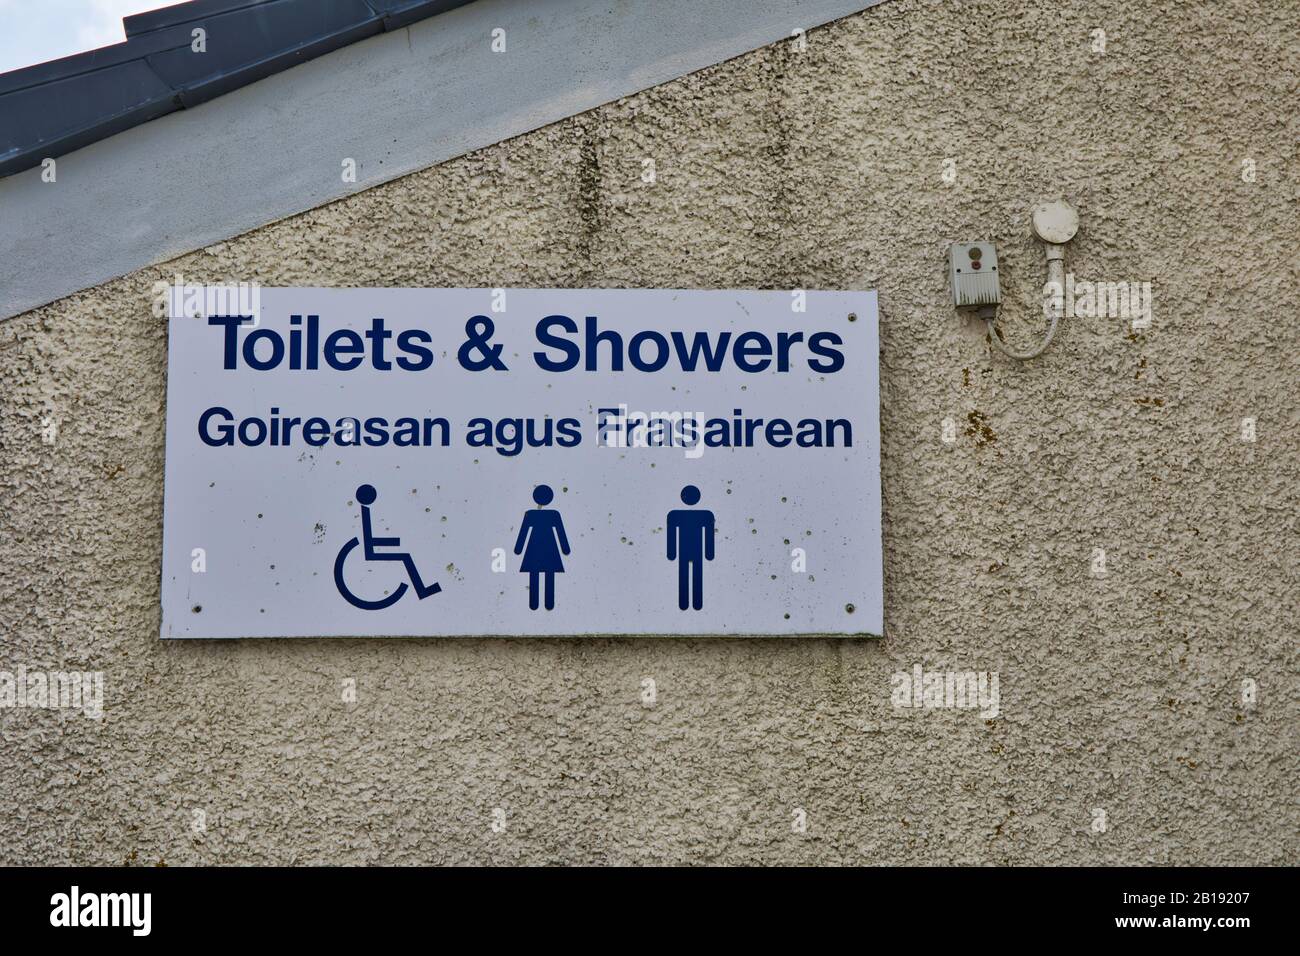 Los baños públicos y duchas se firman en inglés y gaélico en la isla de Scalpay, Isla de Harris, Hébridas Exteriores, Escocia Foto de stock